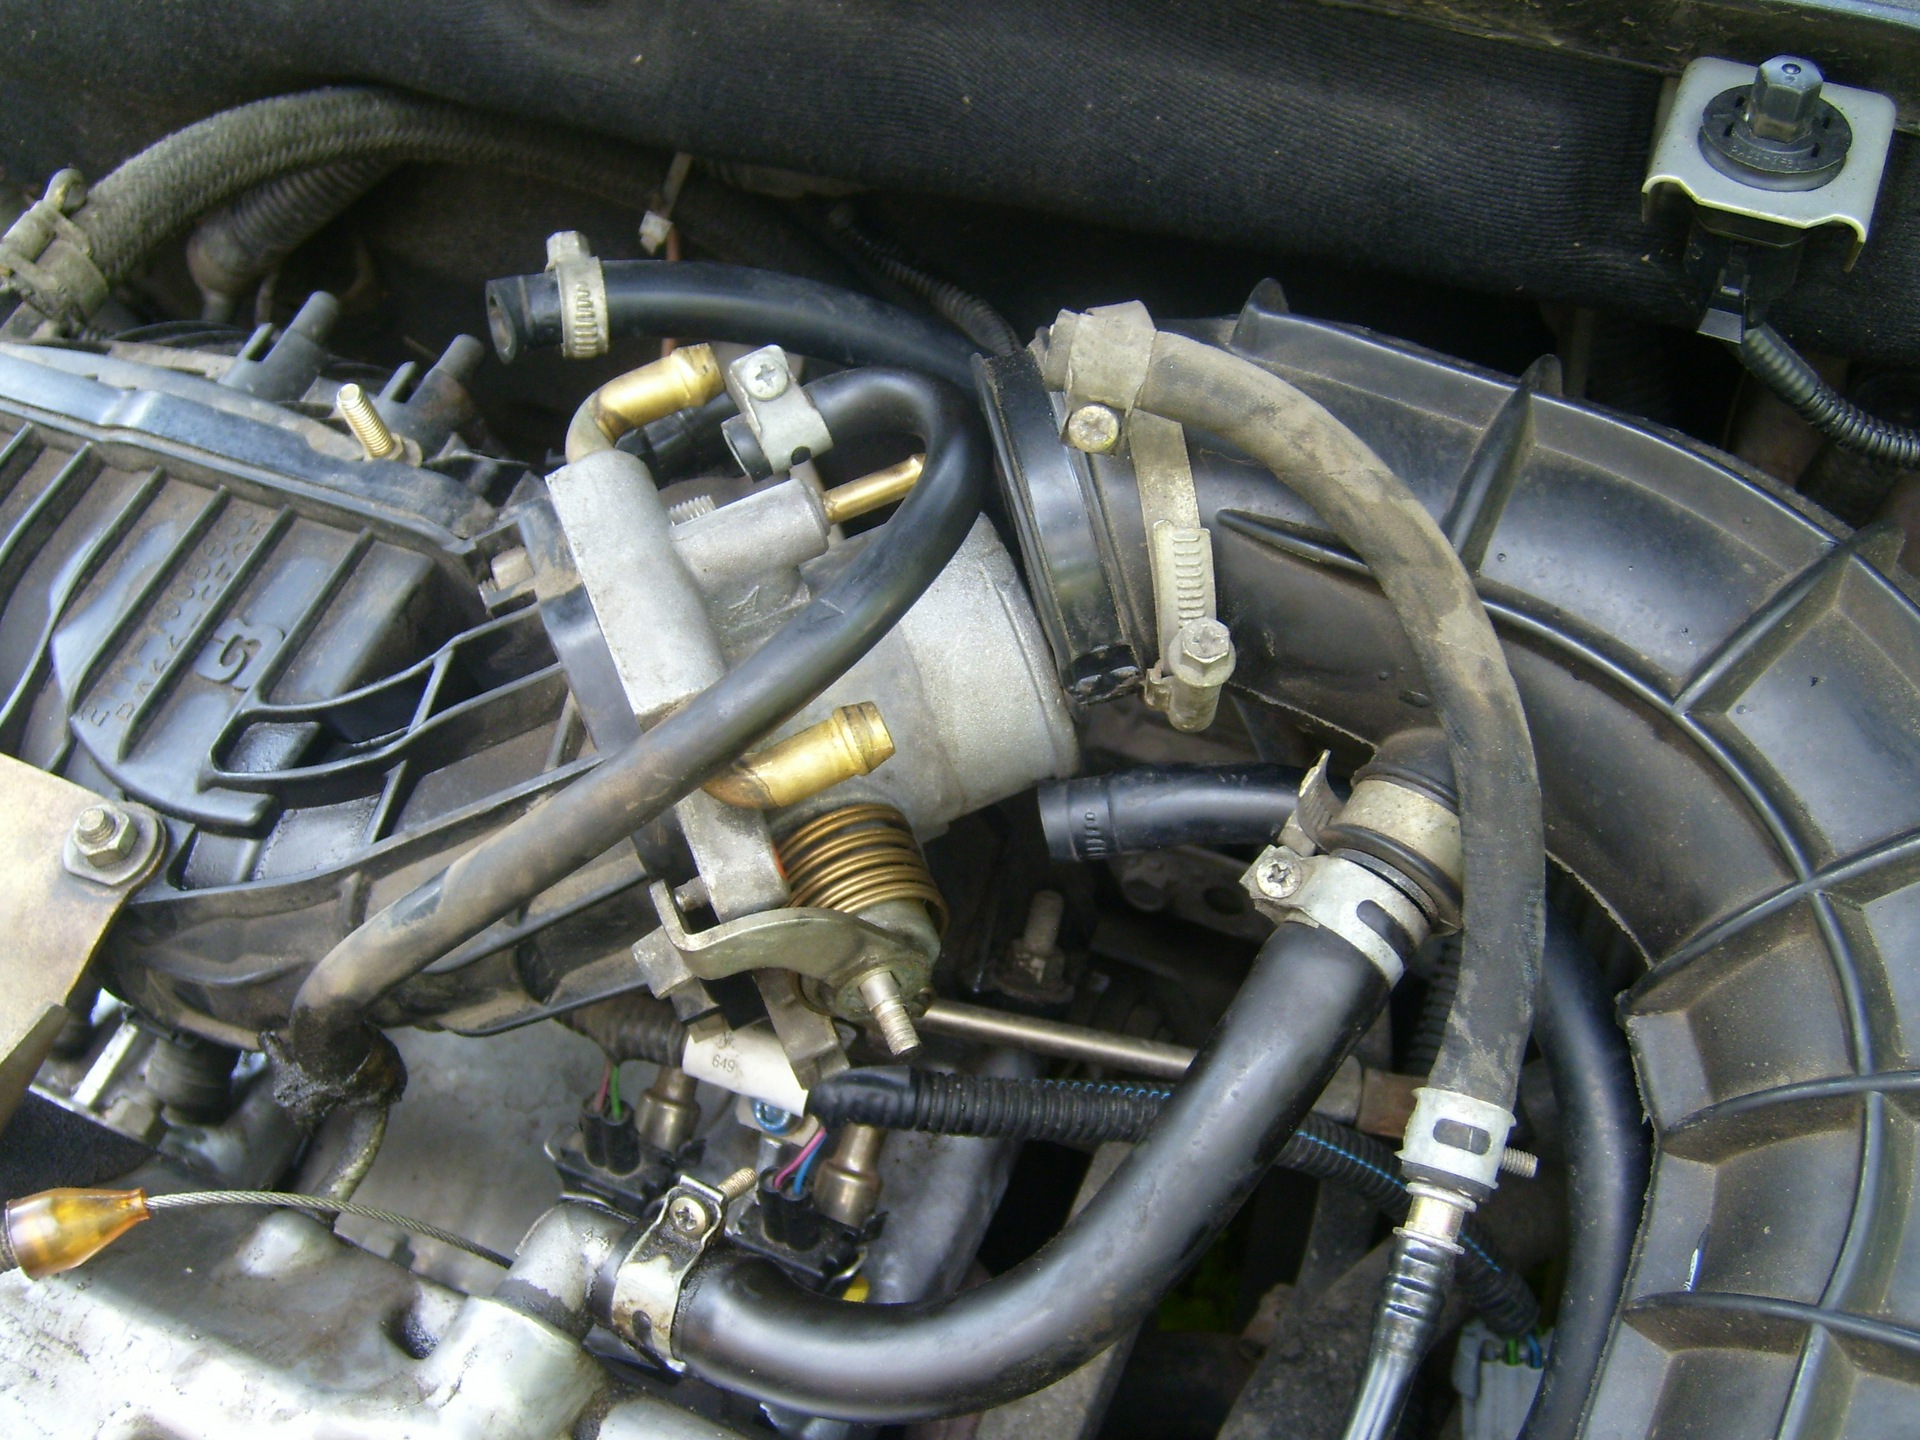 Характеристики мотора 11183